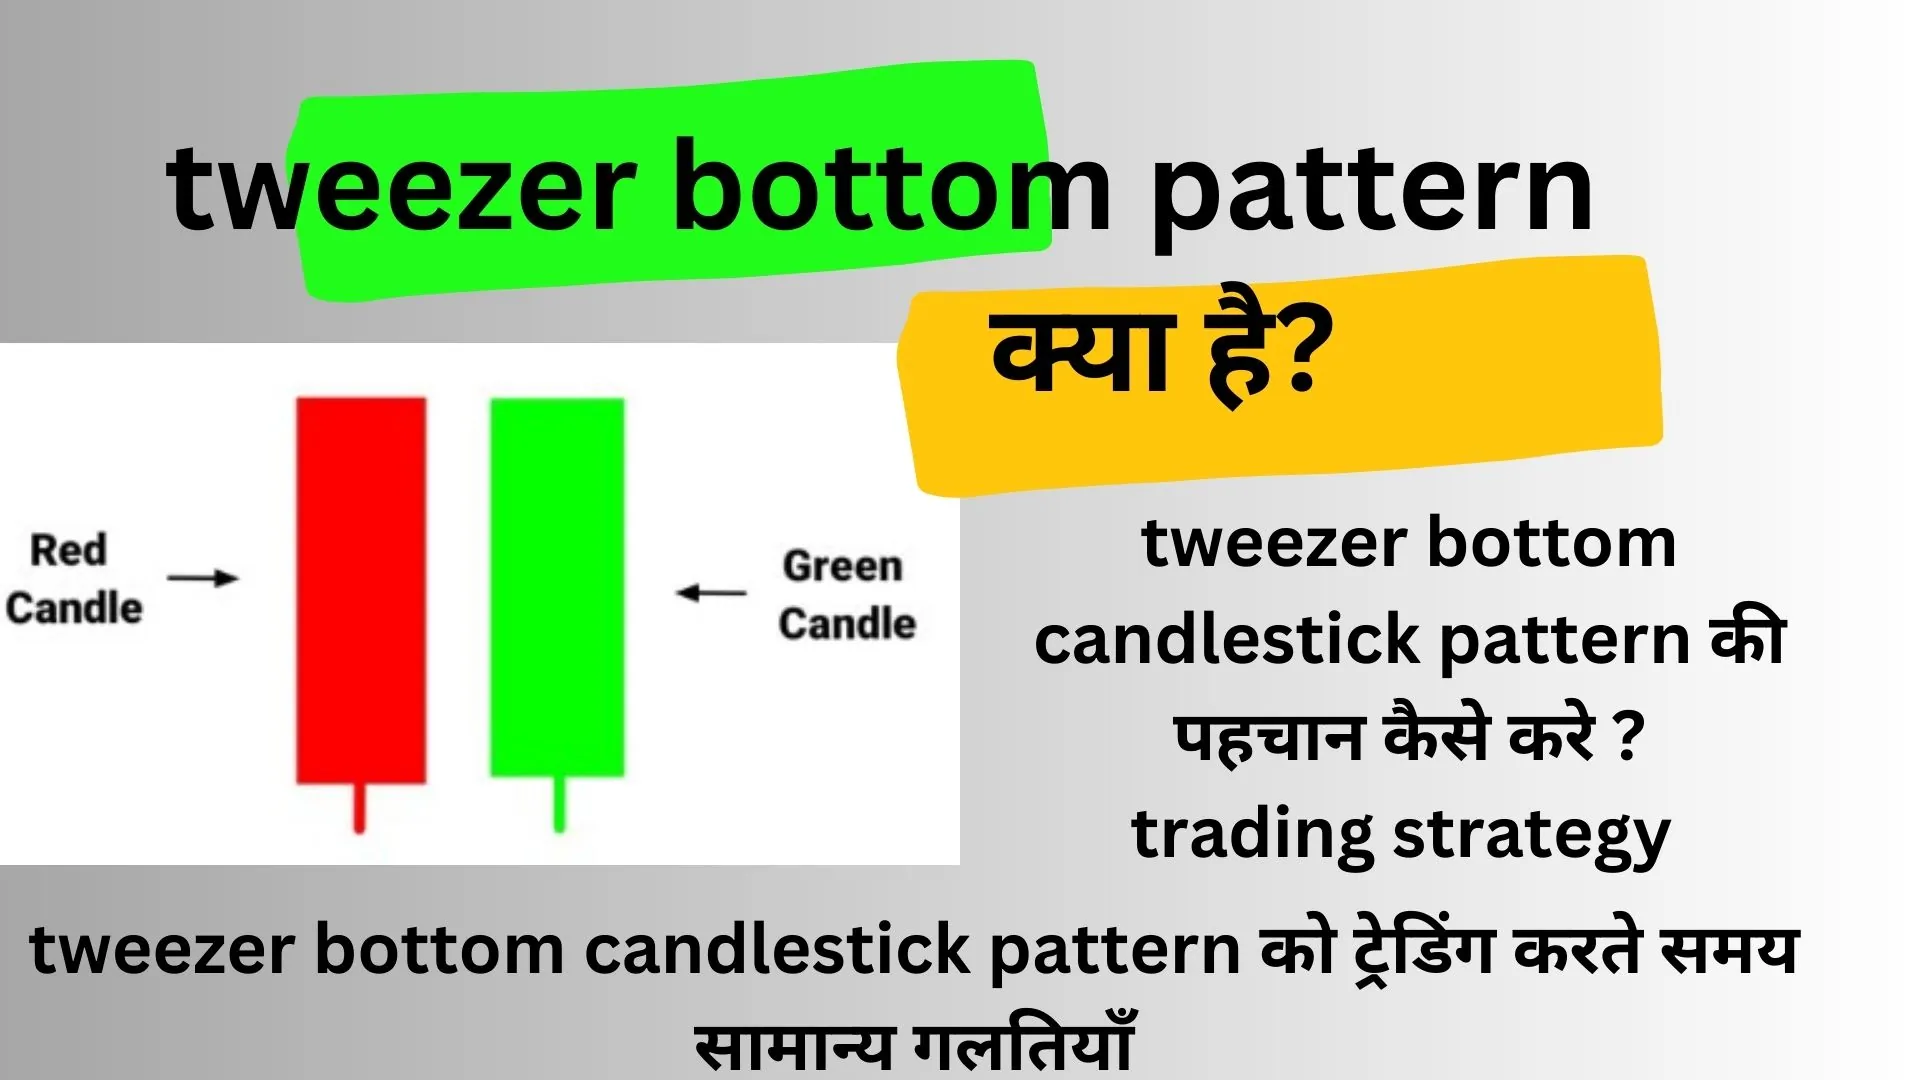 tweezer-bottom-candlestick-pattern-in-hindi